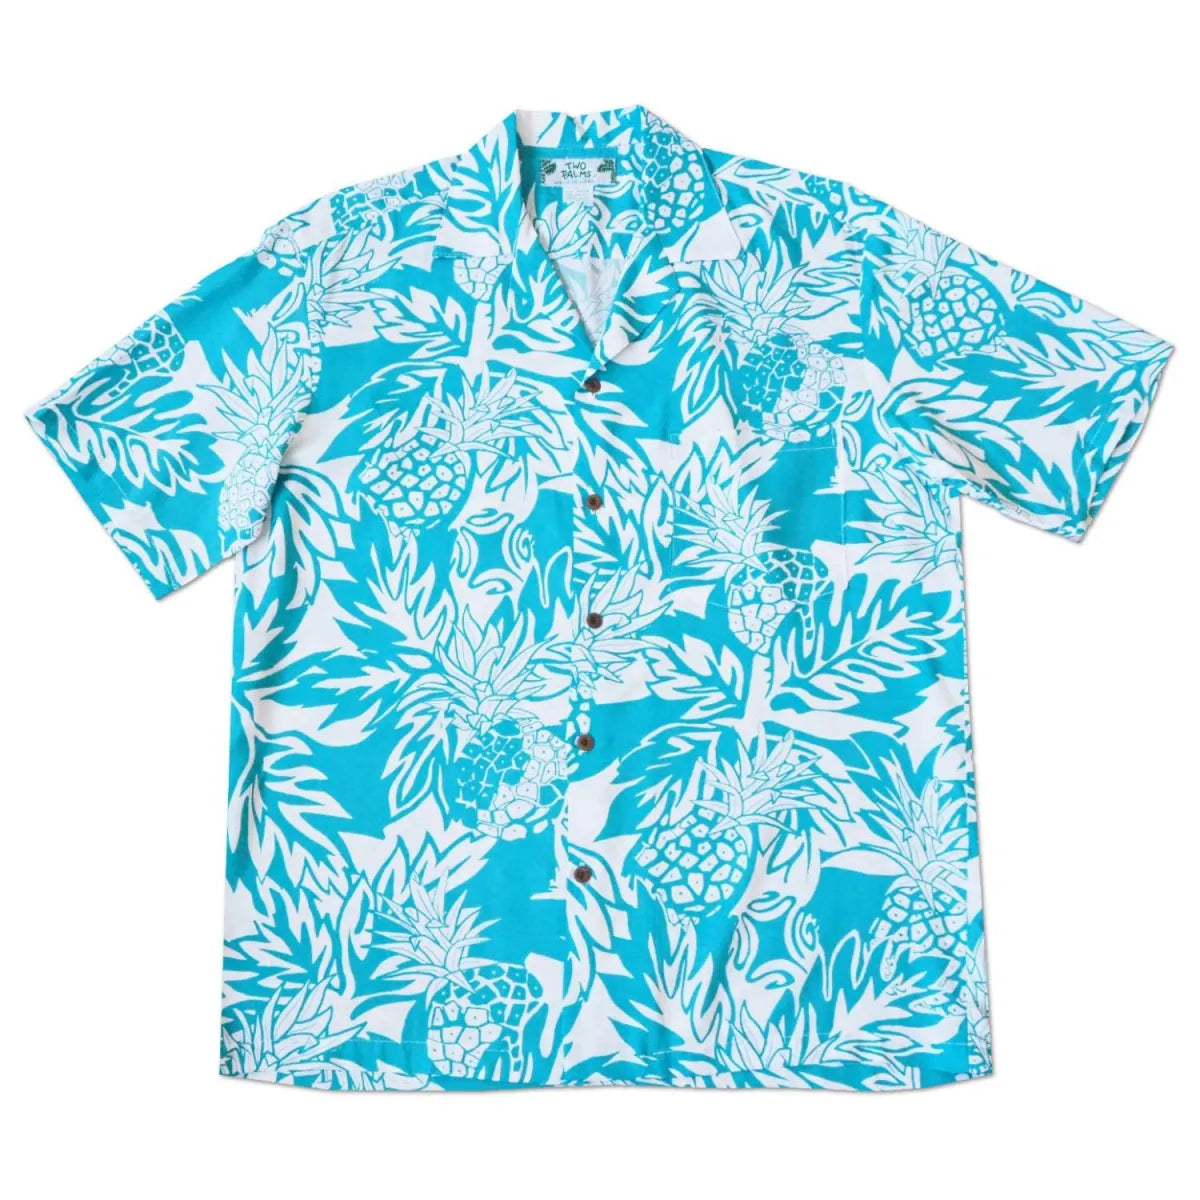 Wild pineapples aqua hawaiian rayon shirt